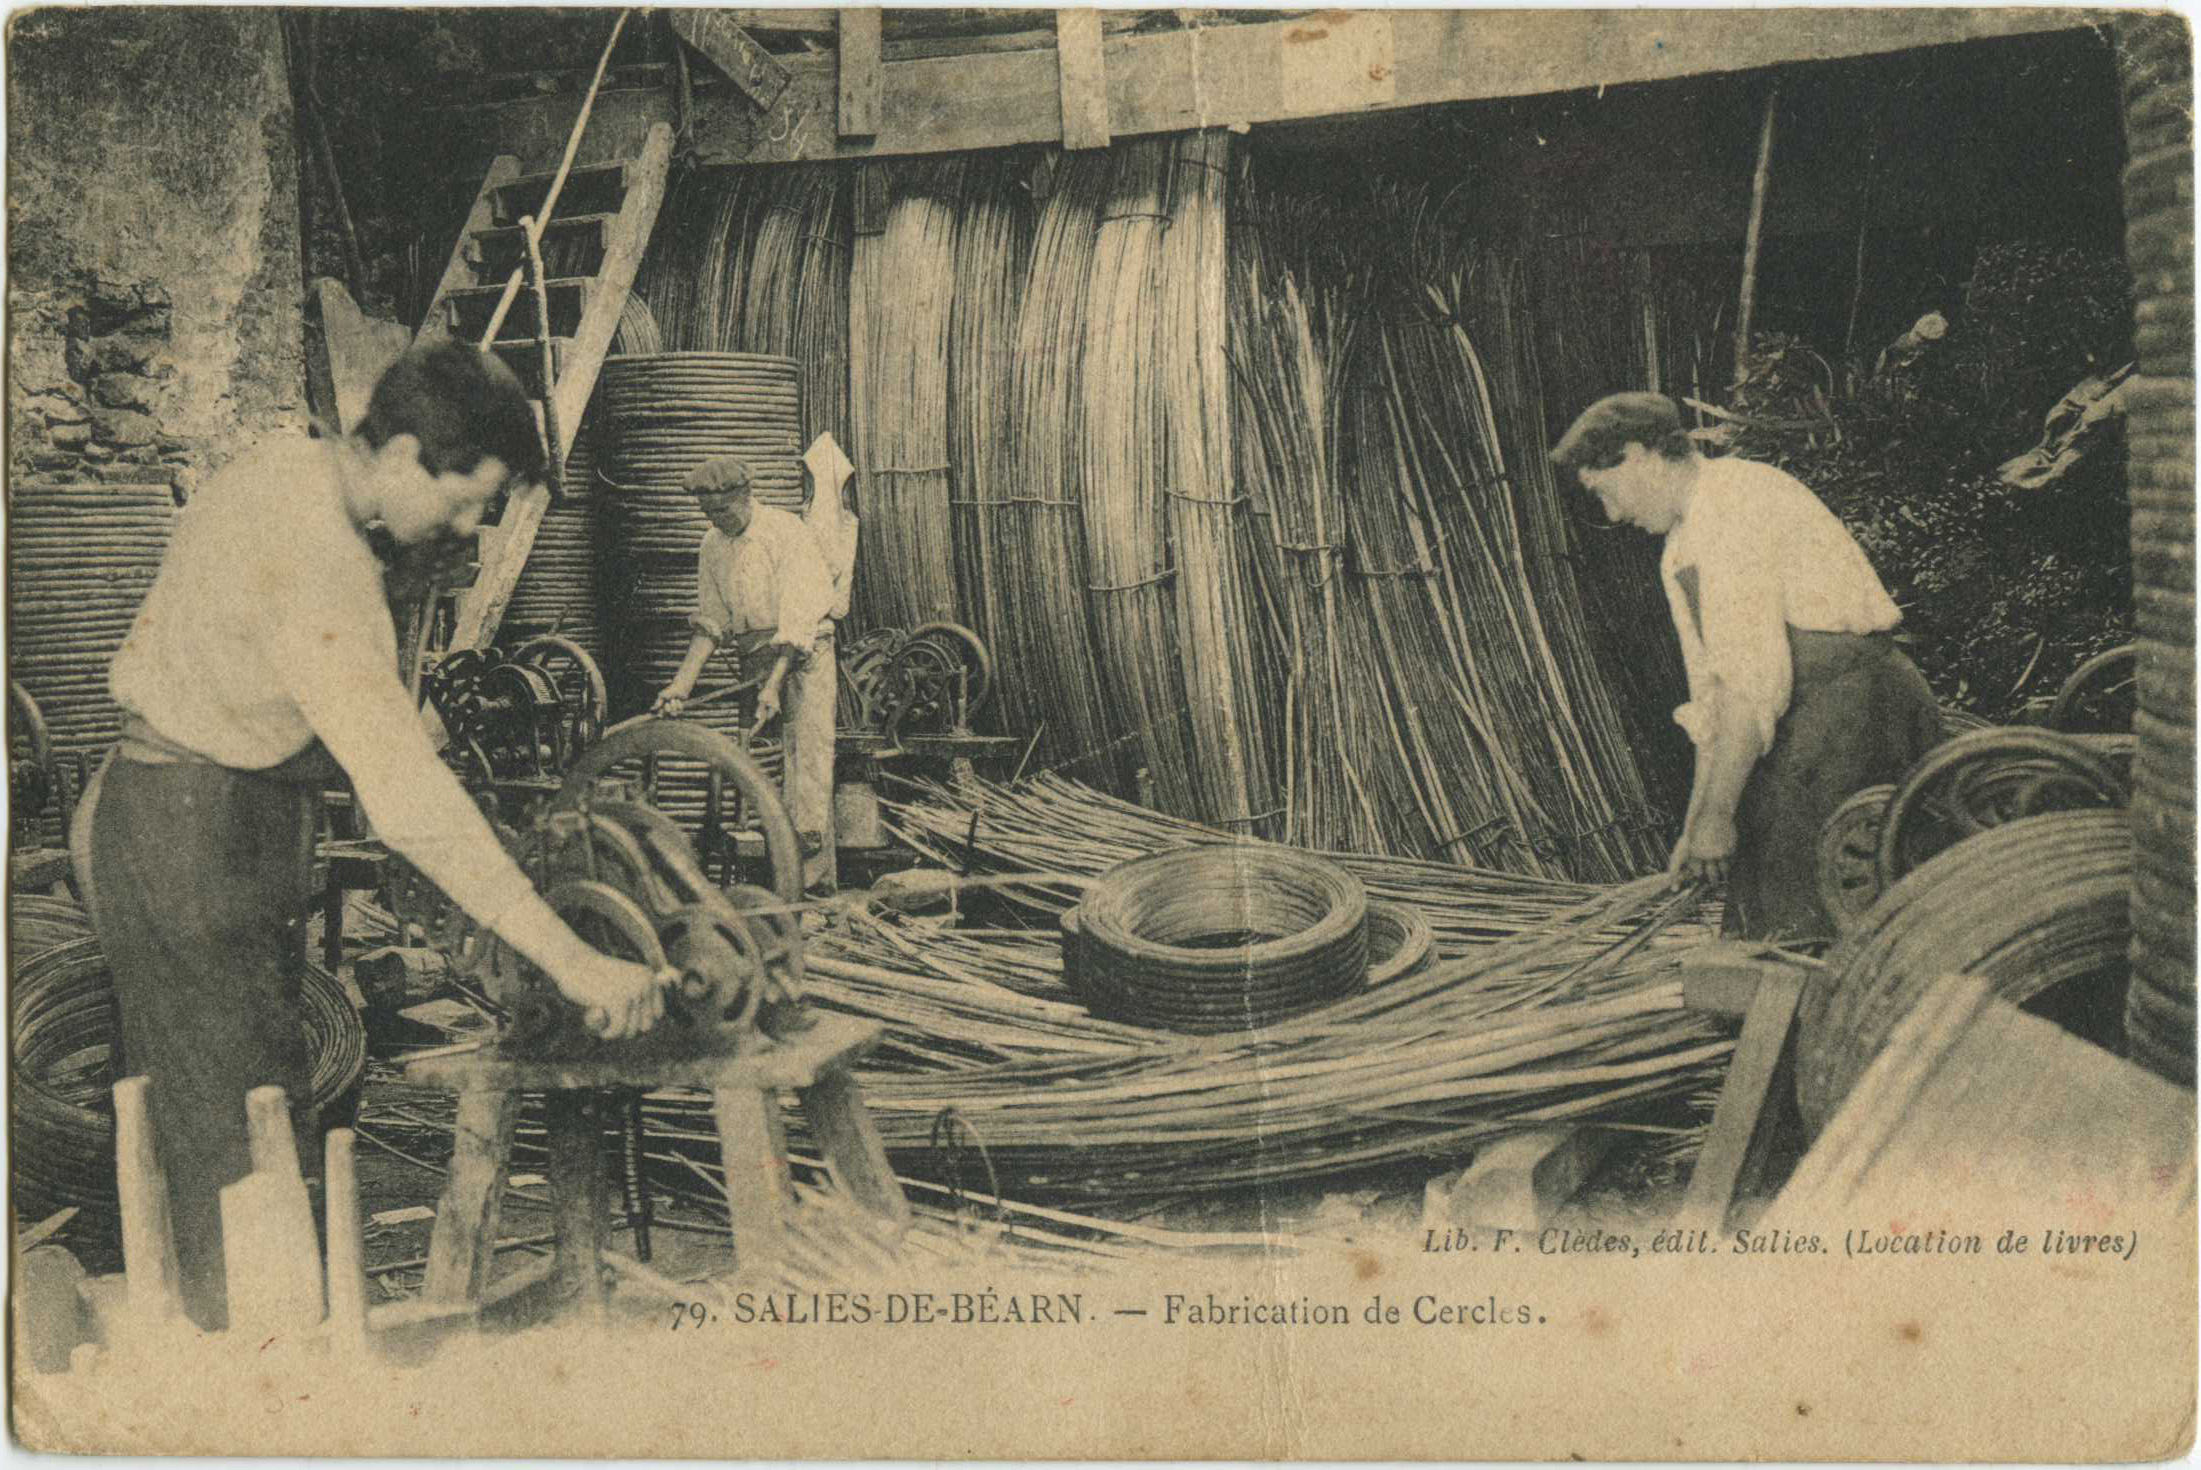 Salies-de-Béarn - Fabrication de Cercles.